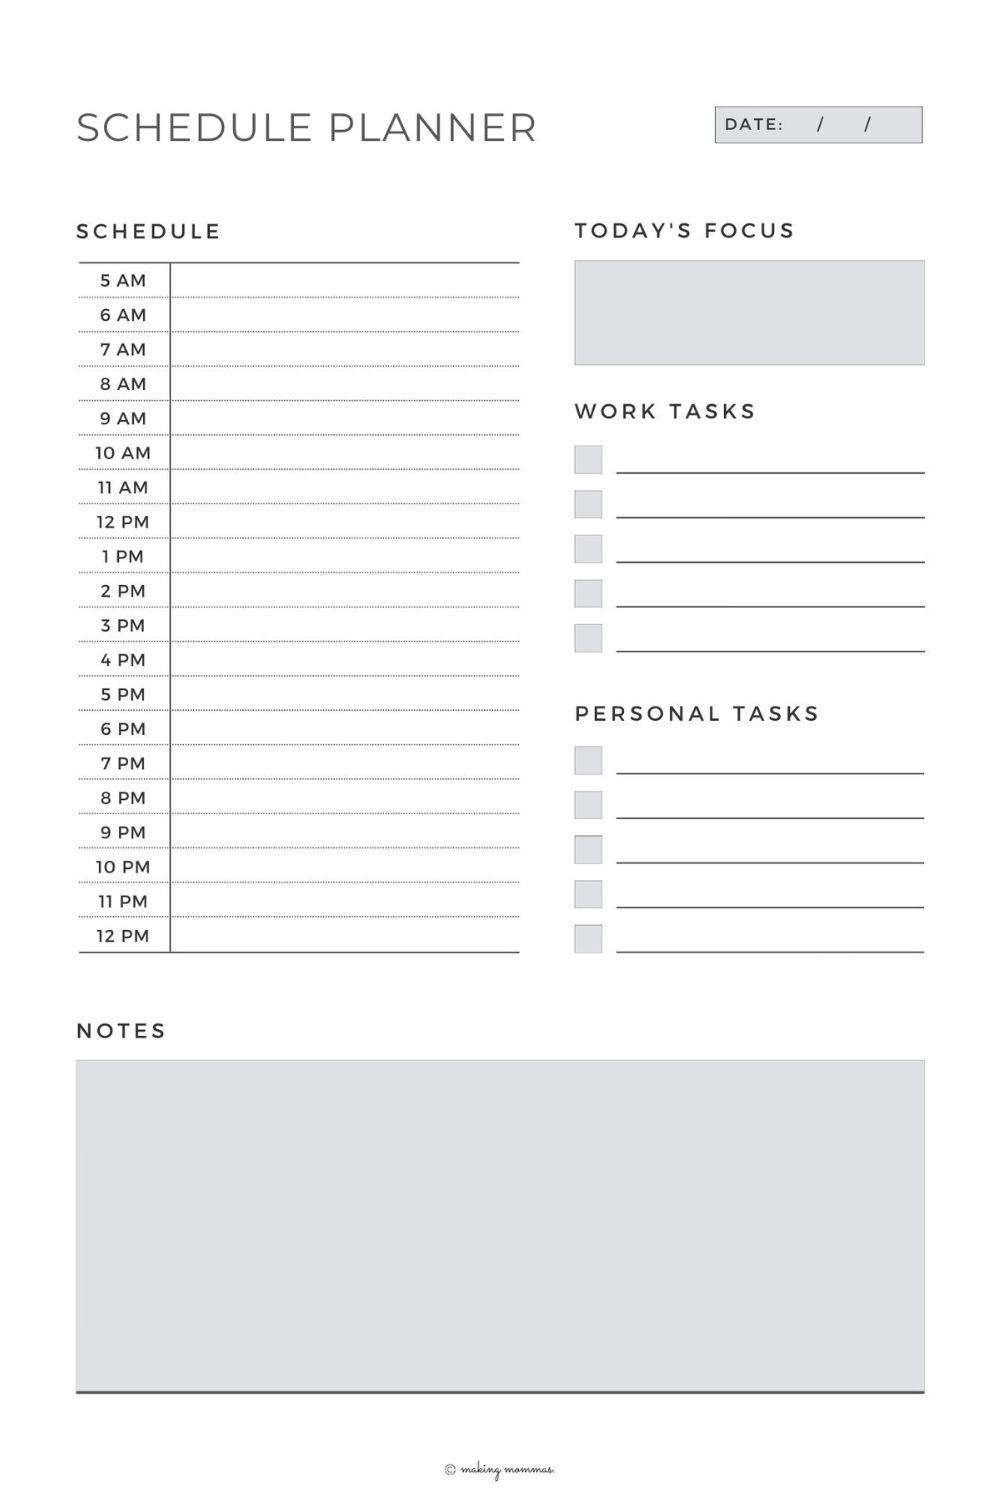 sahm schedule template